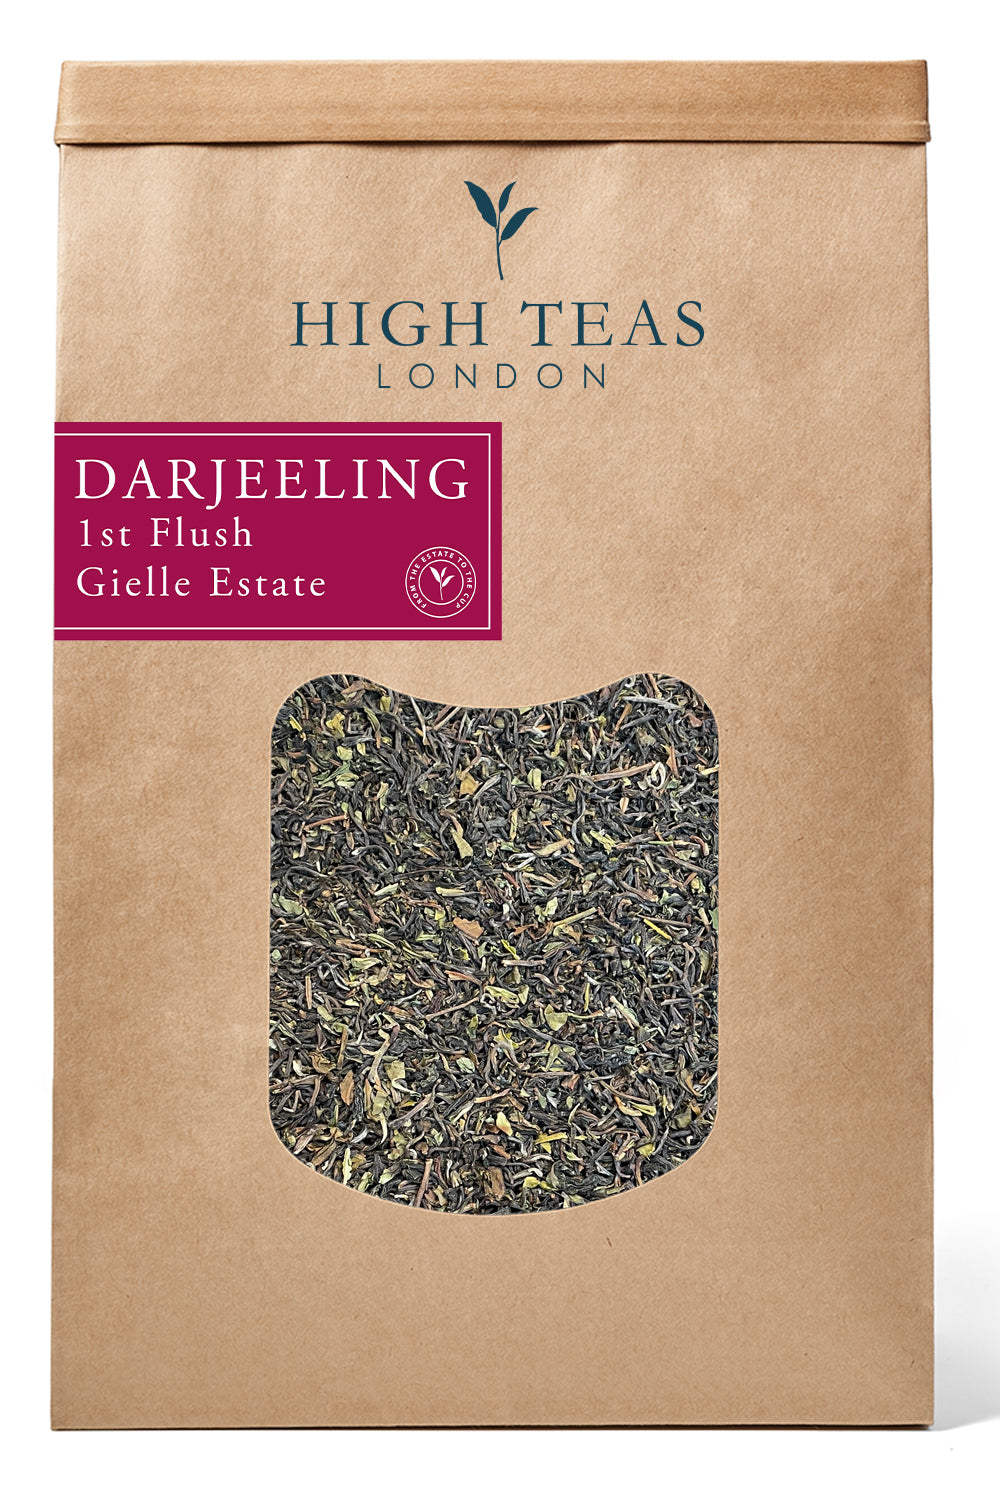 Darjeeling 1st Flush Gielle Estate-500g-Loose Leaf Tea-High Teas